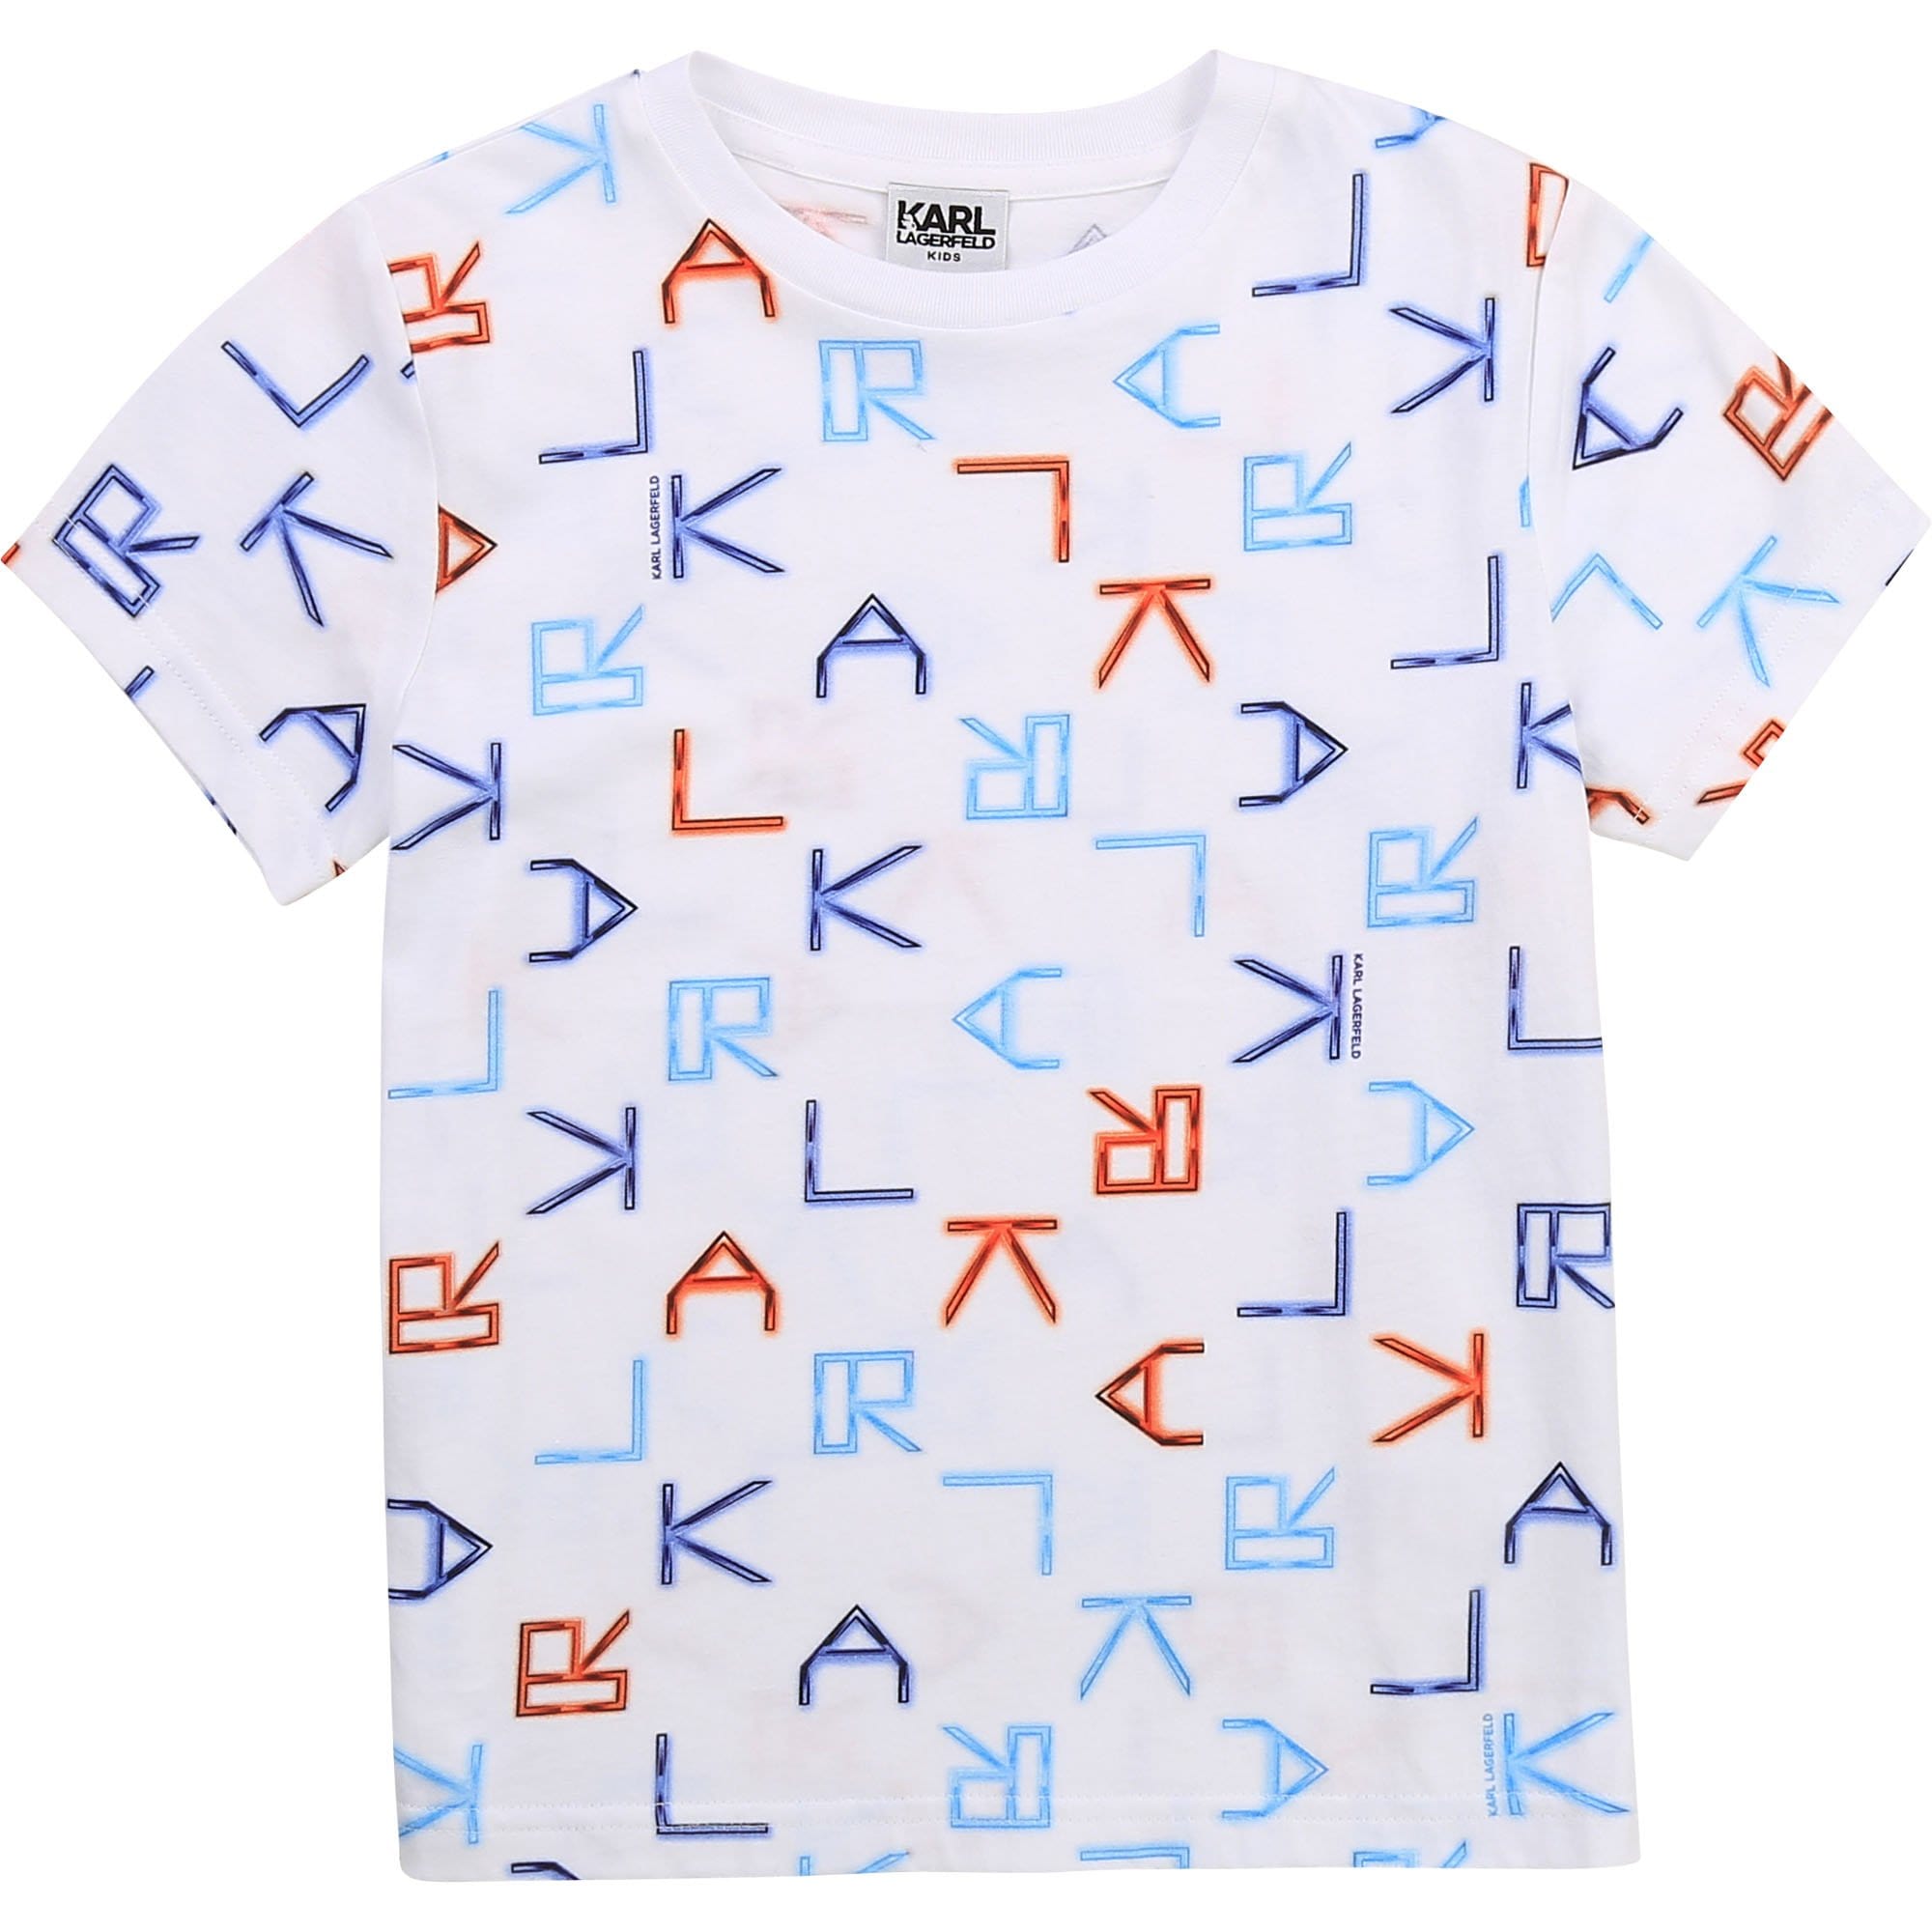 Karl Lagerfeld - All Over Logo Print T Shirt - White